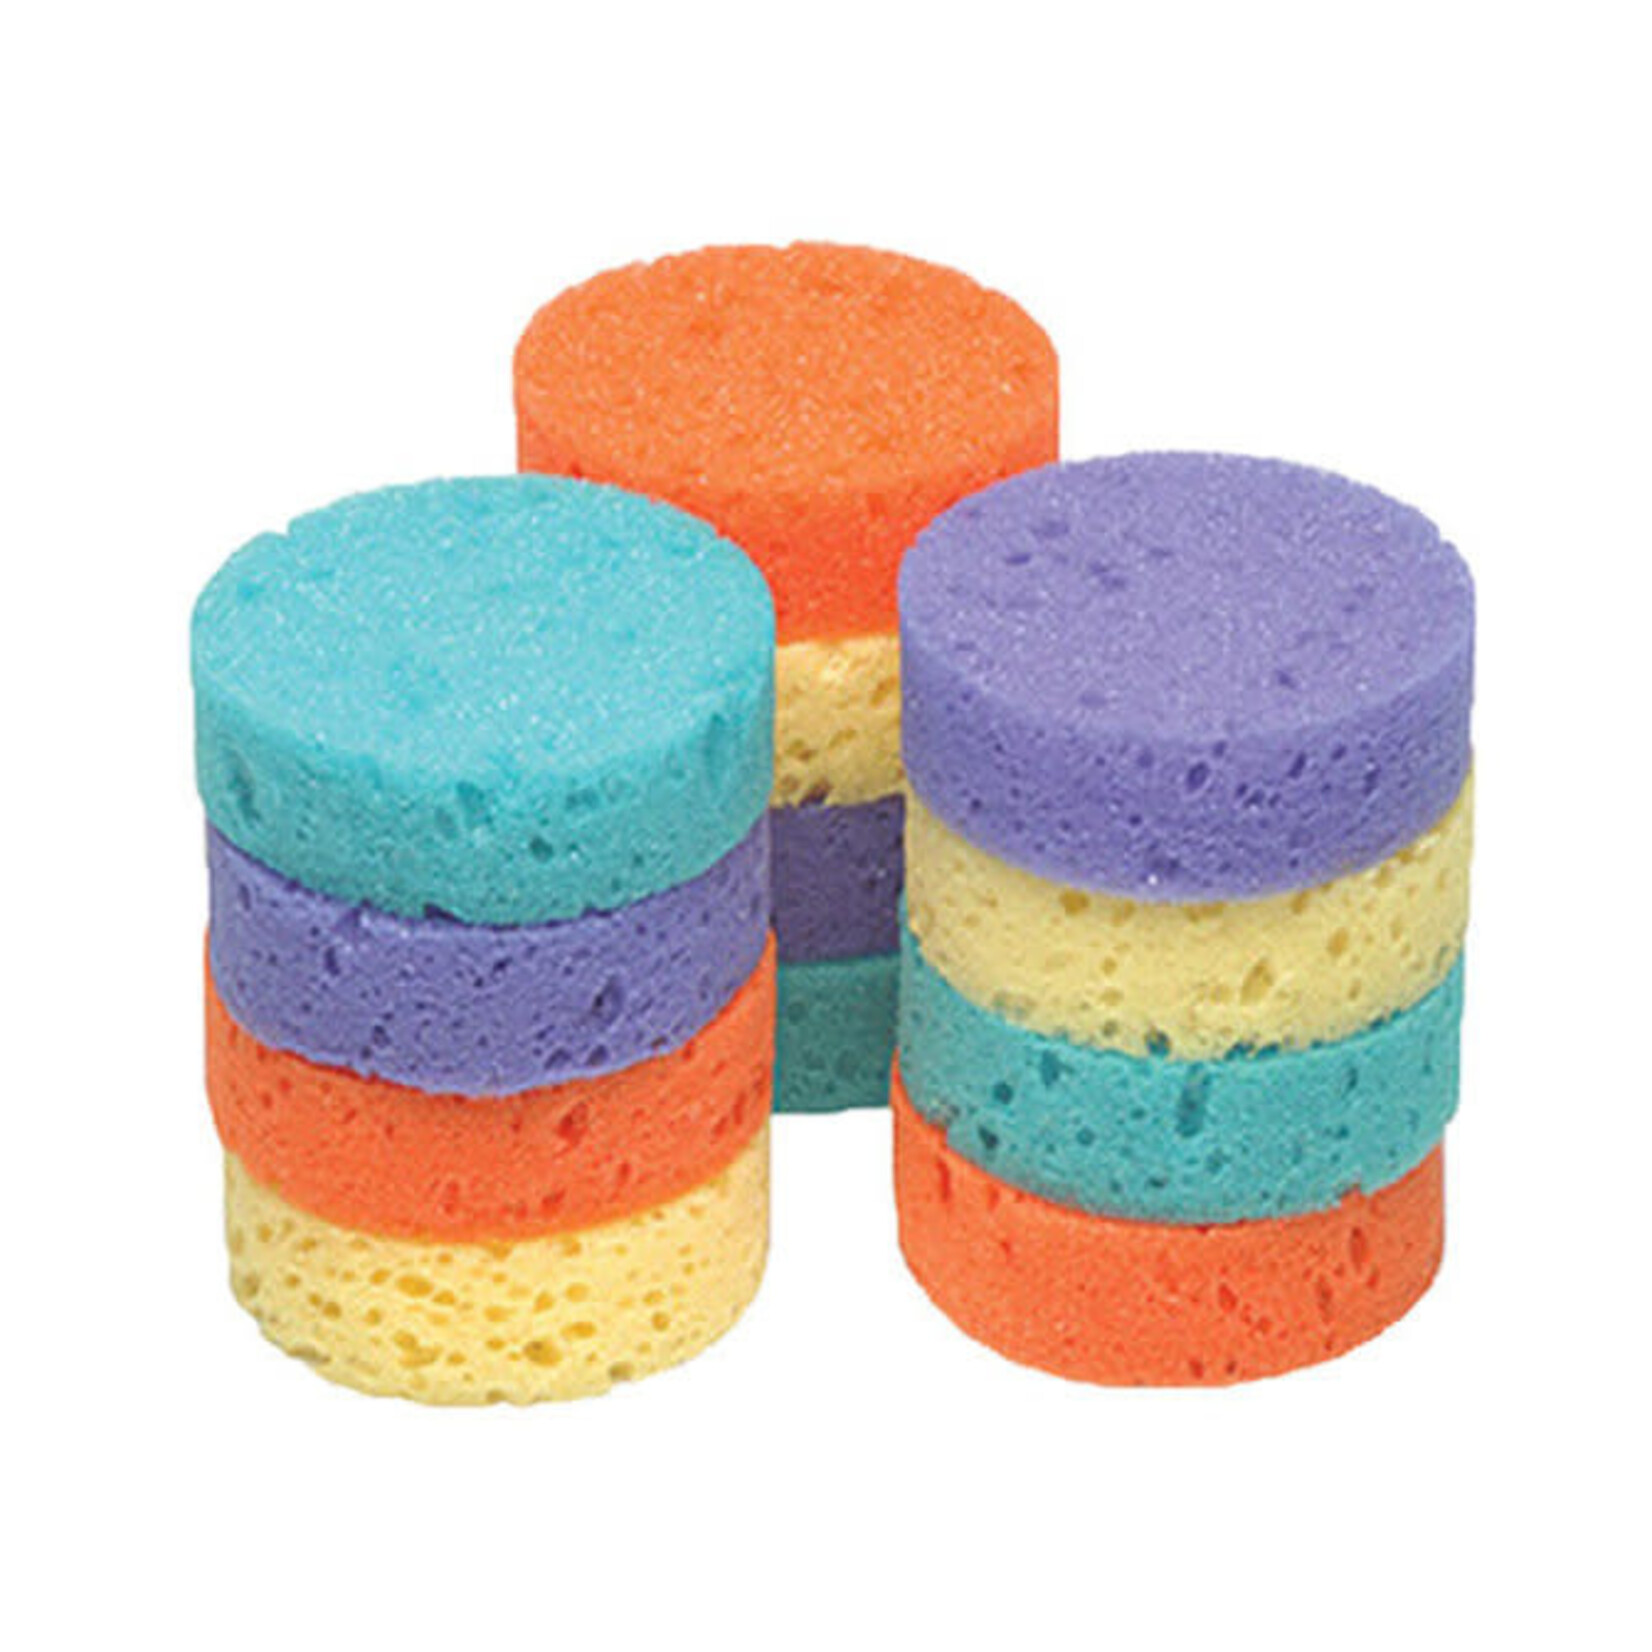 Jack's Mfg Mini Tack Rainbow Sponges